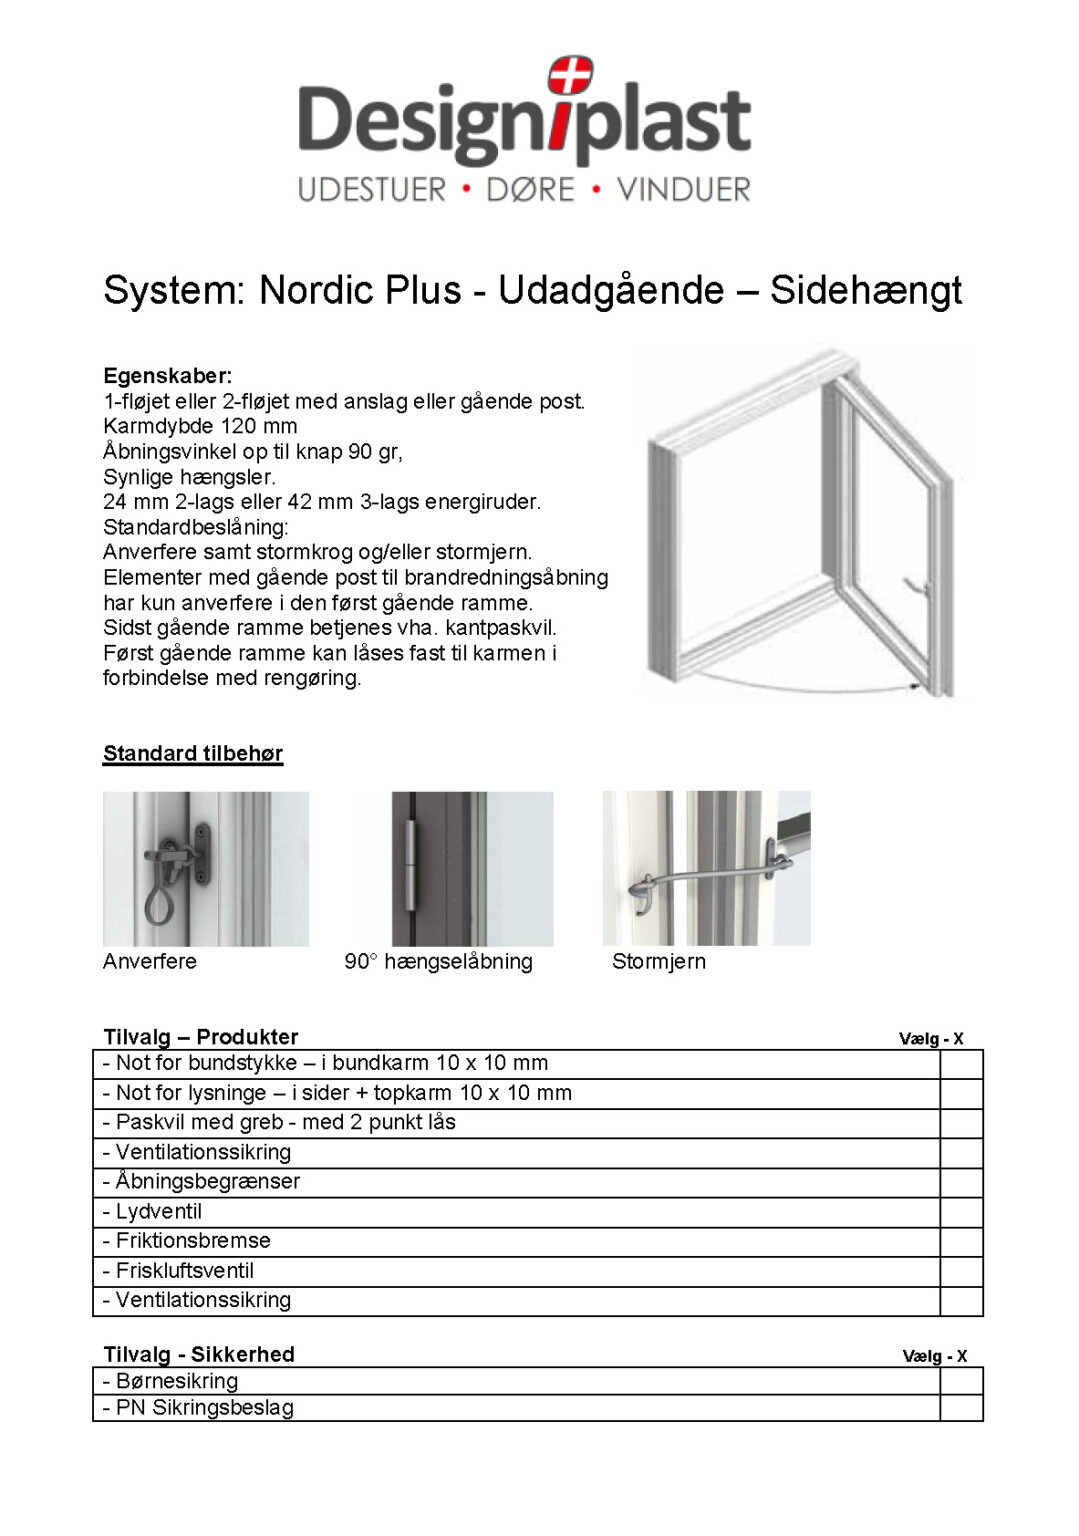 Nordic design plus - Nordic Design Plus - Design i plast - Sidehaengt